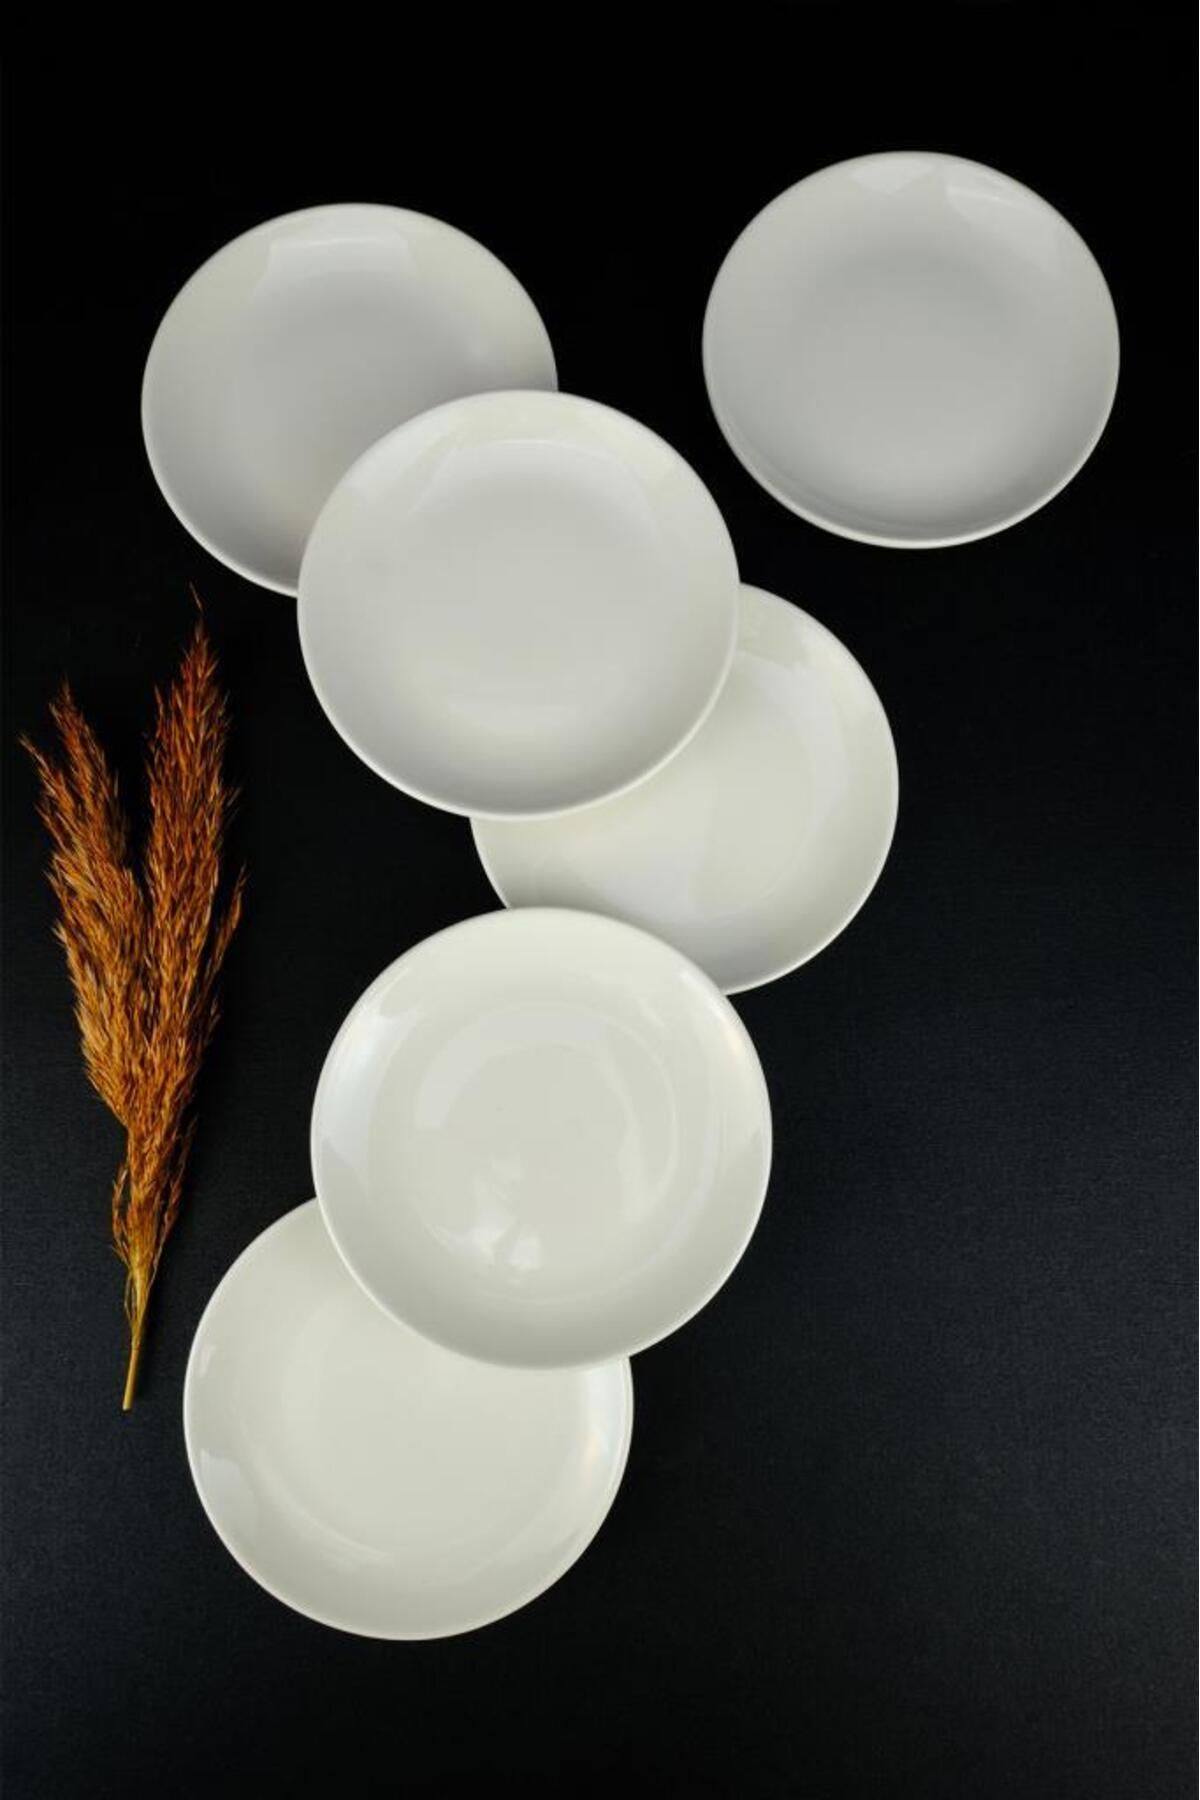 Digithome Porselen 6’lı Mini Pasta ve Sunum Tabağı Seti 15 Cm Krem - EO15DU0014 C320.105